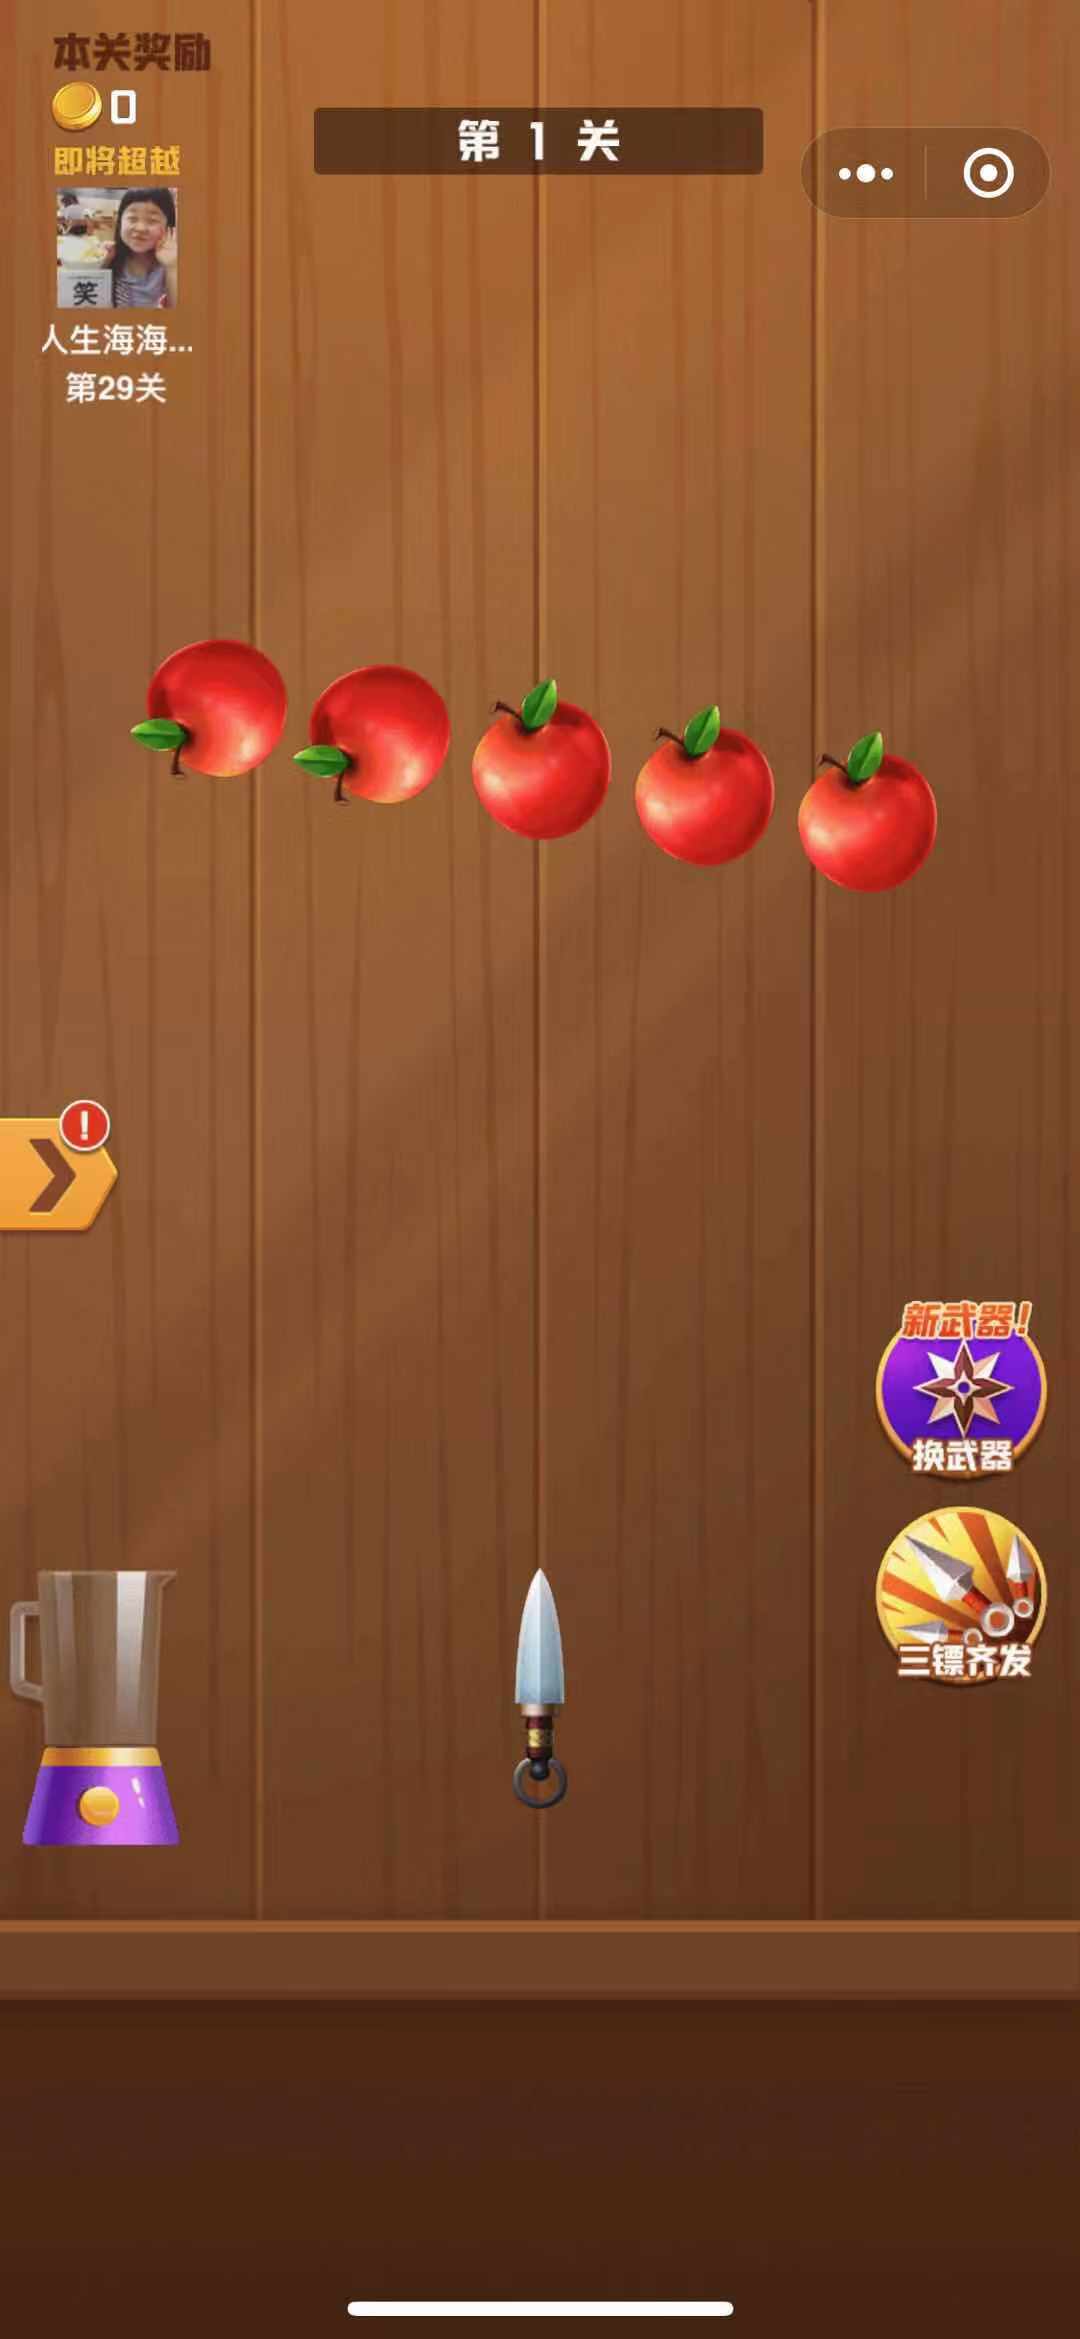 王牌切水果游戏红包版最新版 v1.03.003截图